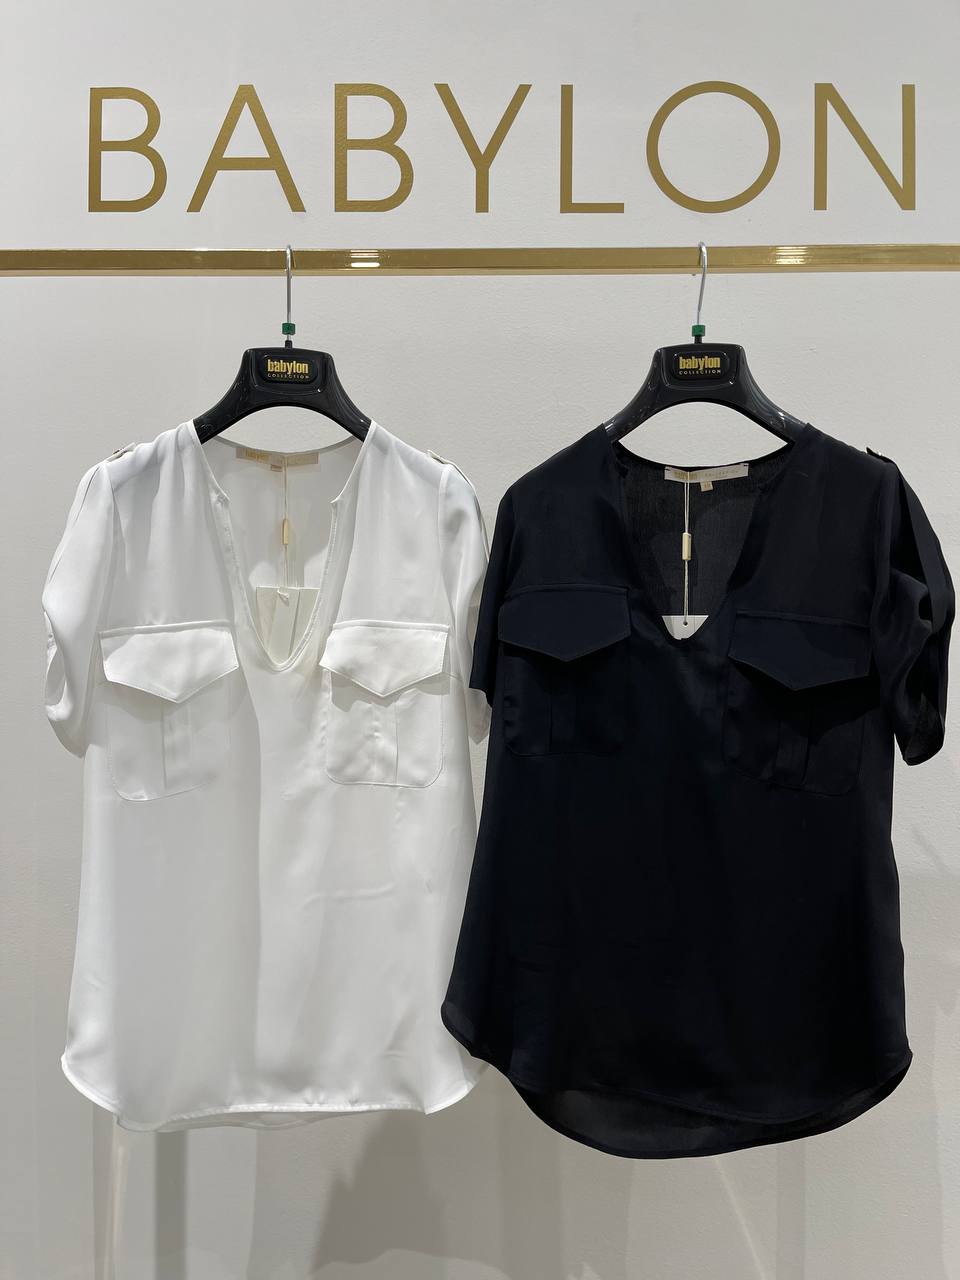 Итальянская одежда, бренд Babylon, арт. 73262203